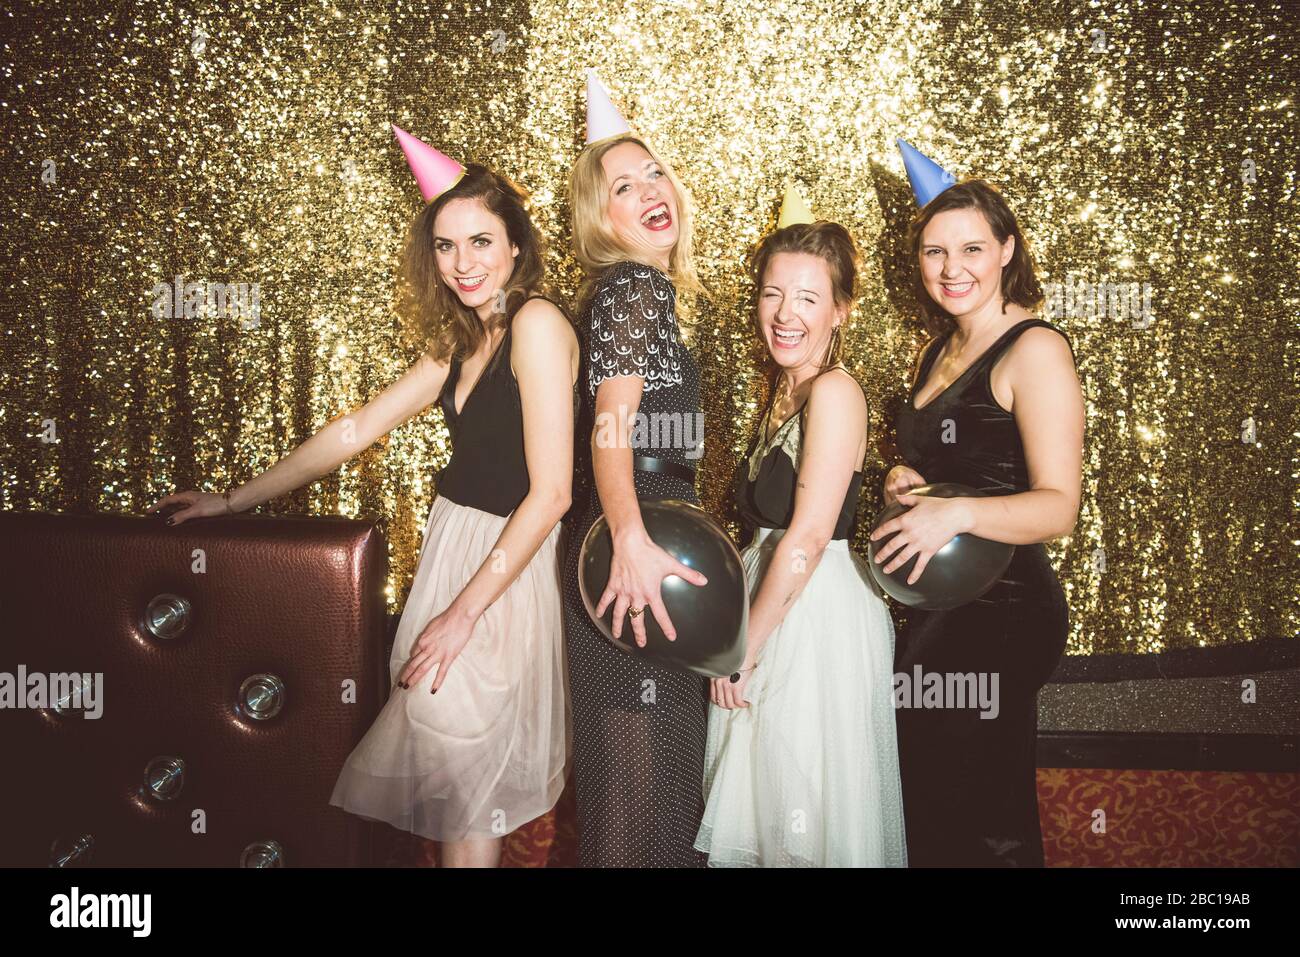 Porträt von vier glücklichen Frauen, die in einem Club Partyhüte tragen Stockfoto